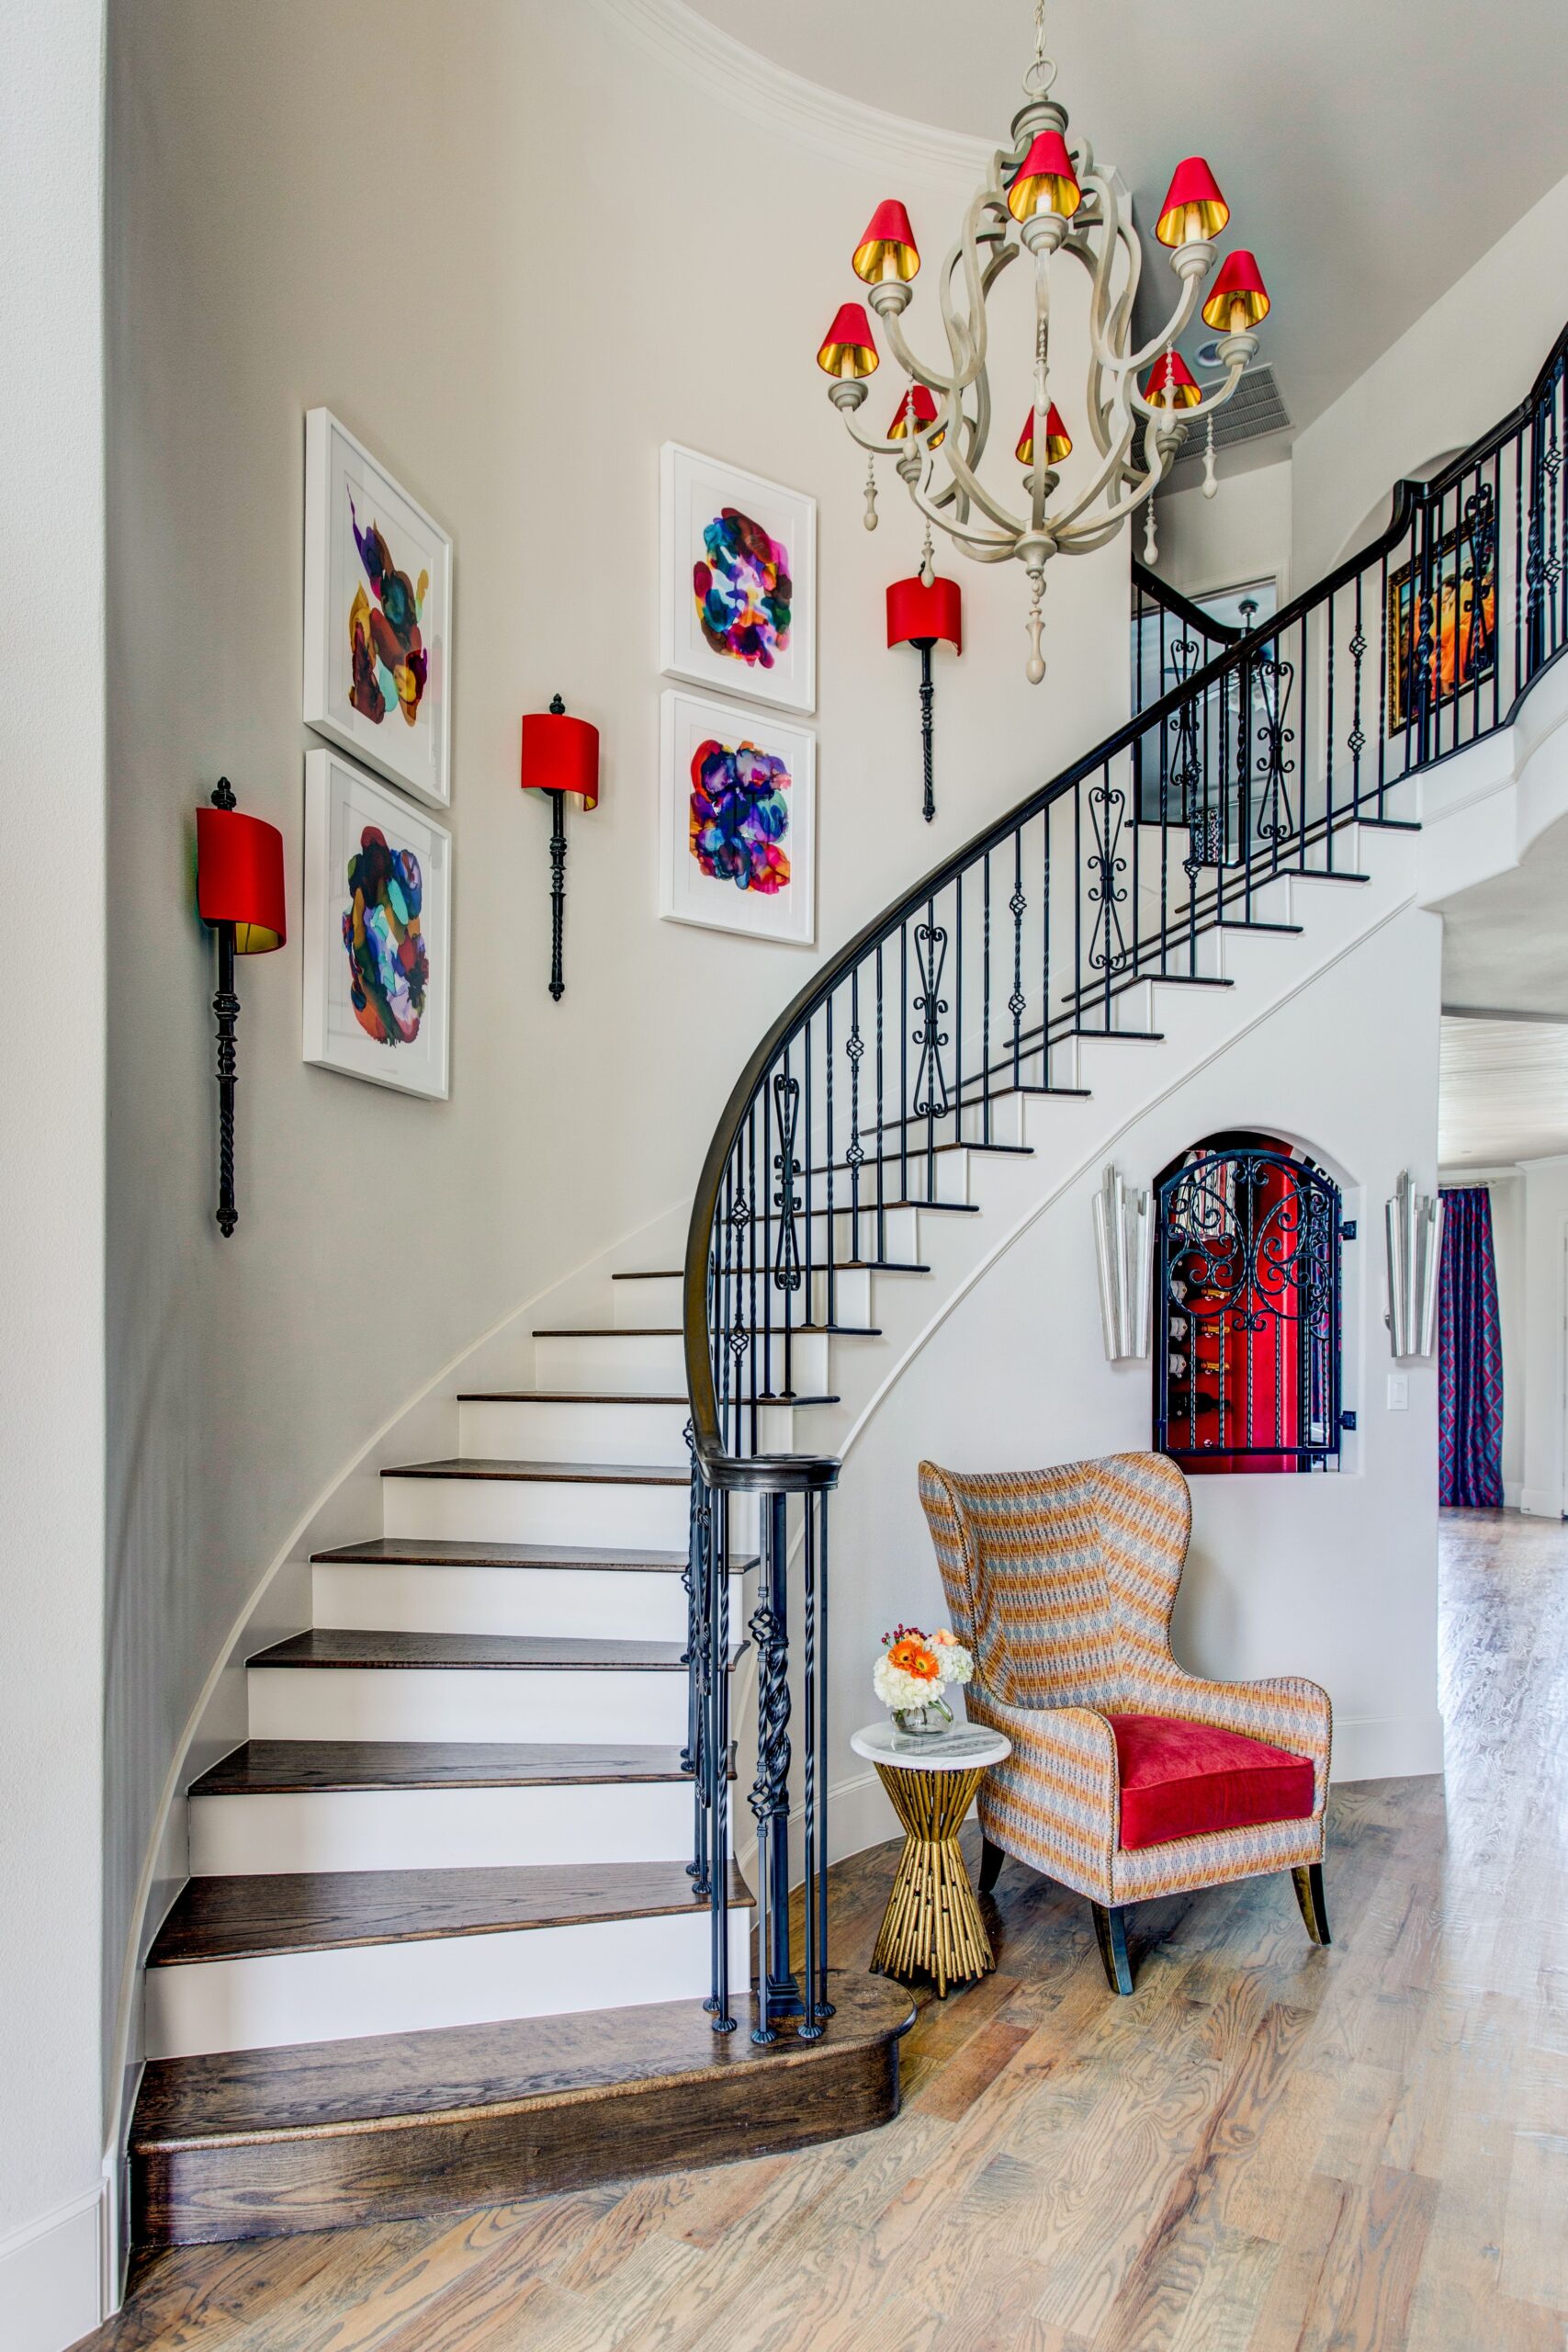 decoration stairs ideas Niche Utama Home  Stylish Staircase Decorating Ideas - How to Decorate Stairways